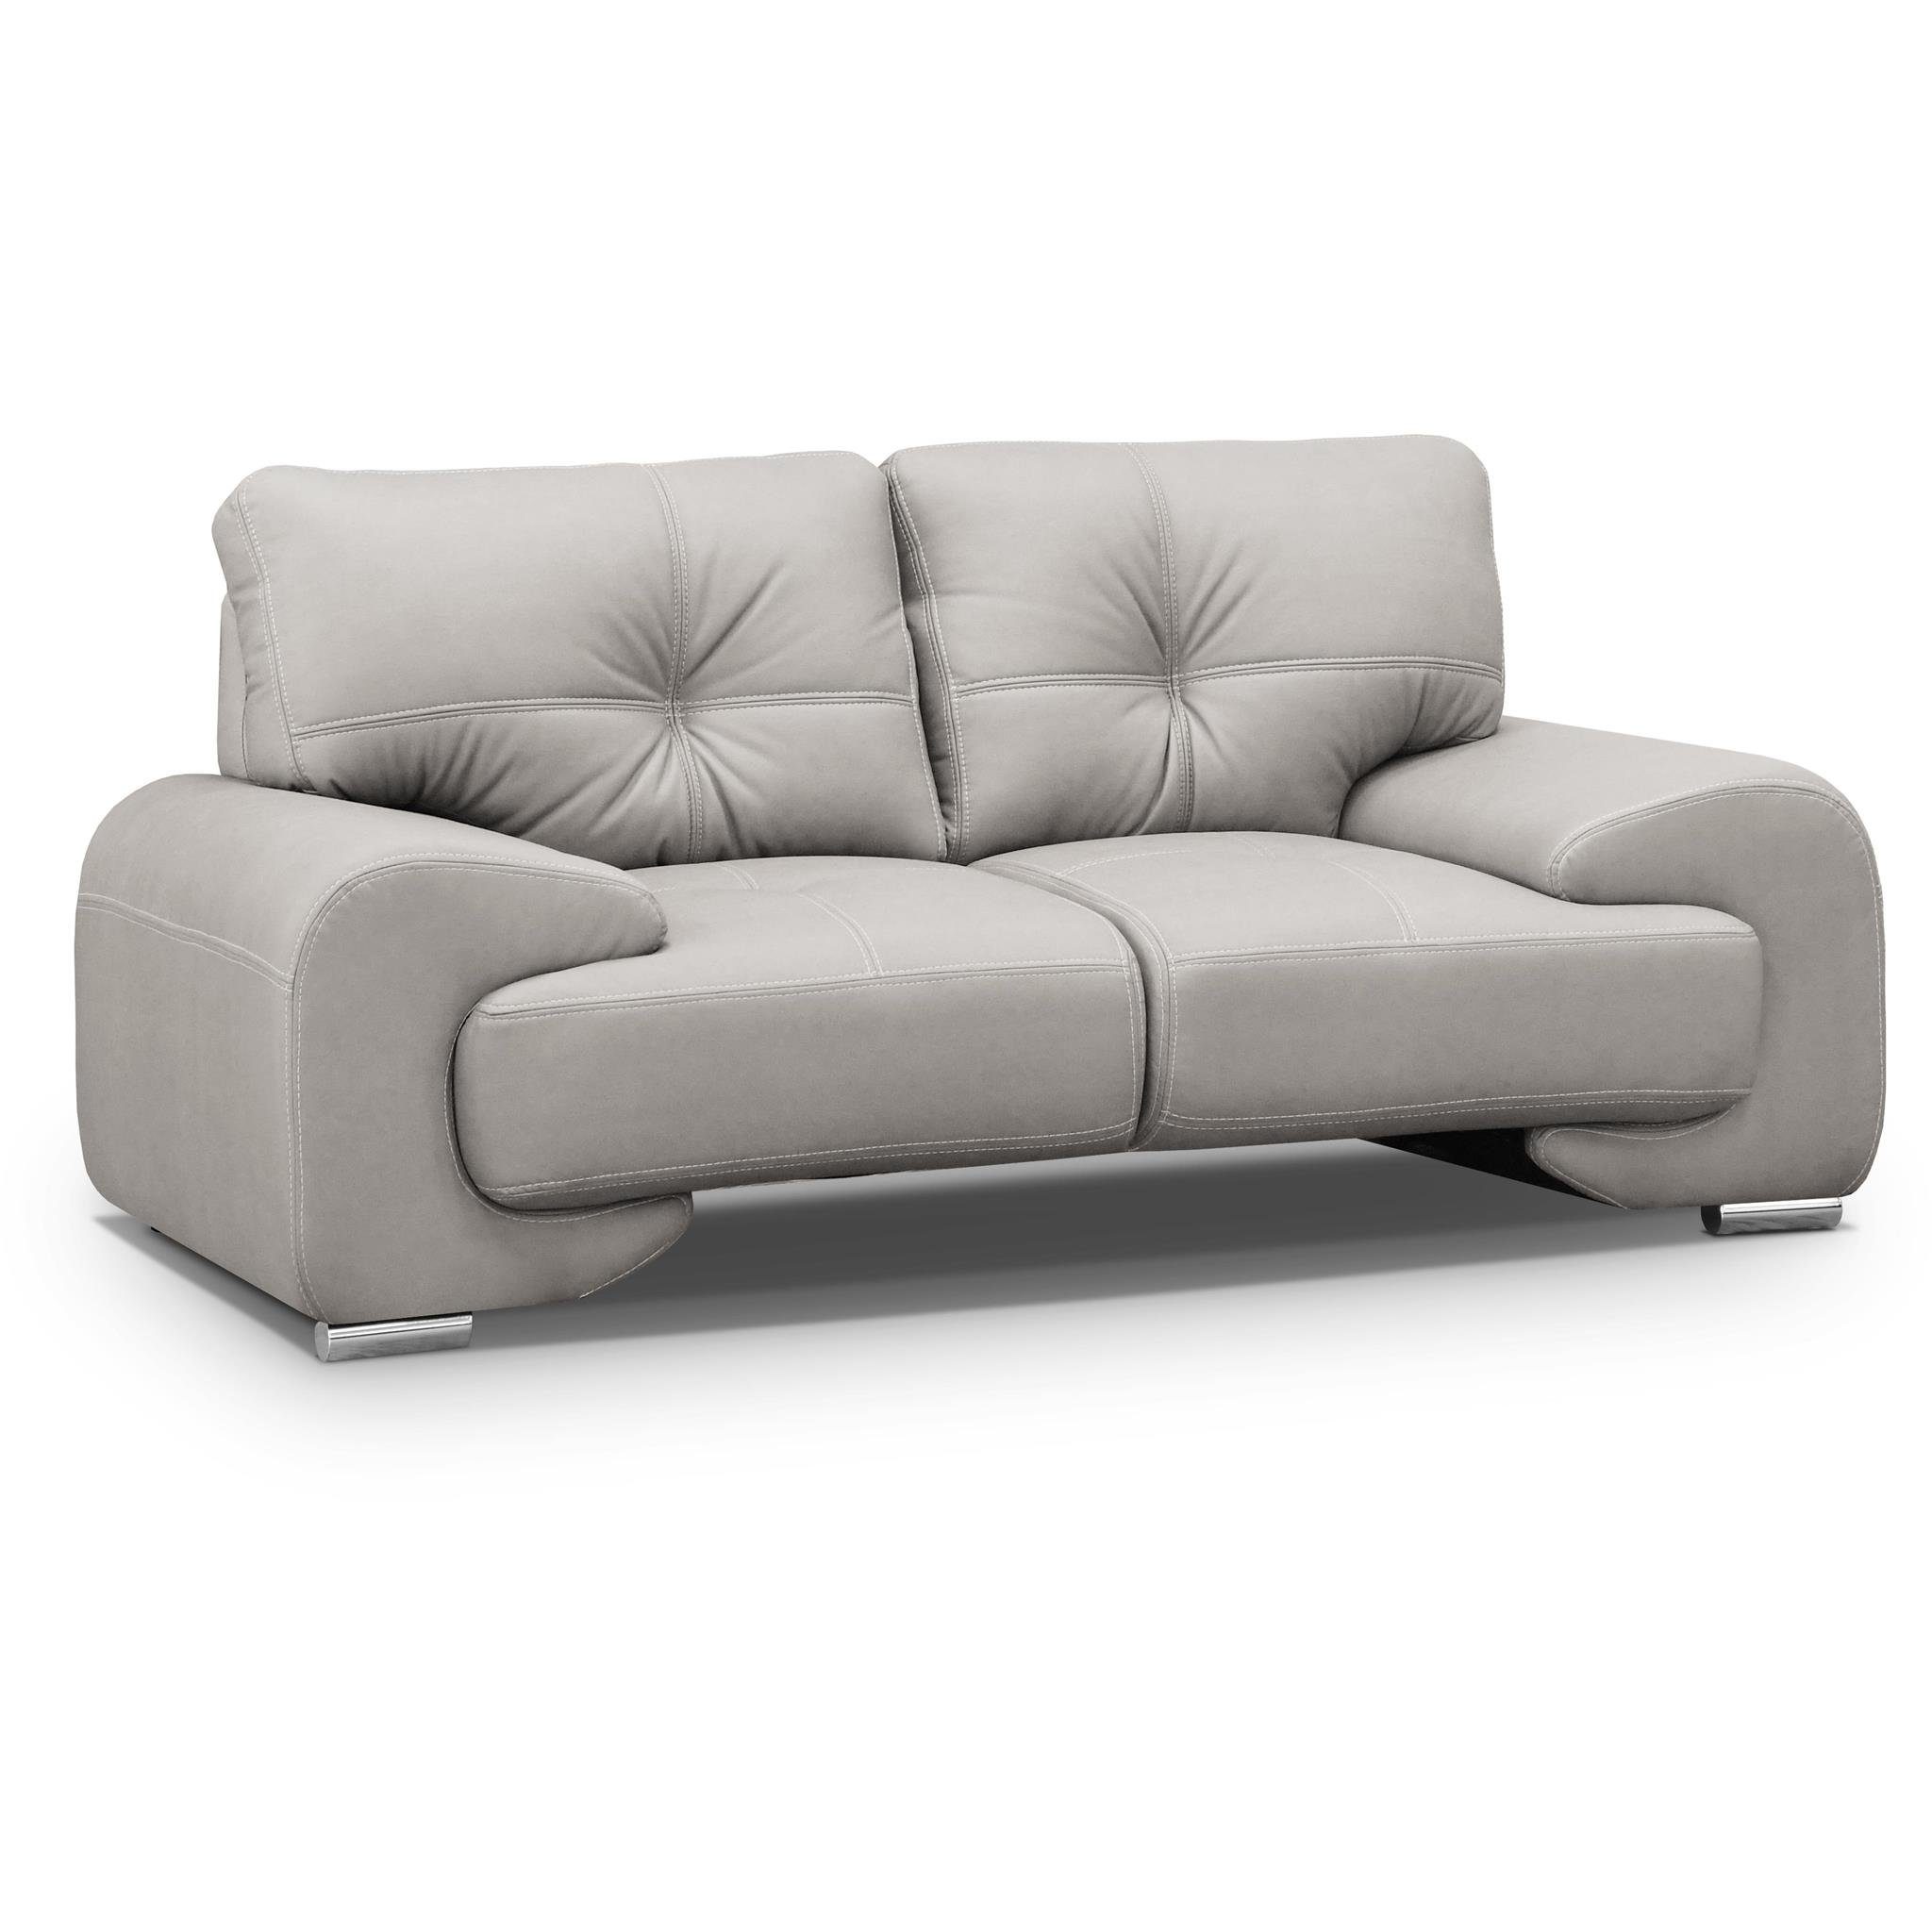 Beautysofa 2-Sitzer Maxime lux, 2-Sitzer Sofa im modernes Design aus Kunstleder, mit Wellenunterfederung, mit dekorativen Nähten Beige (vega 02)